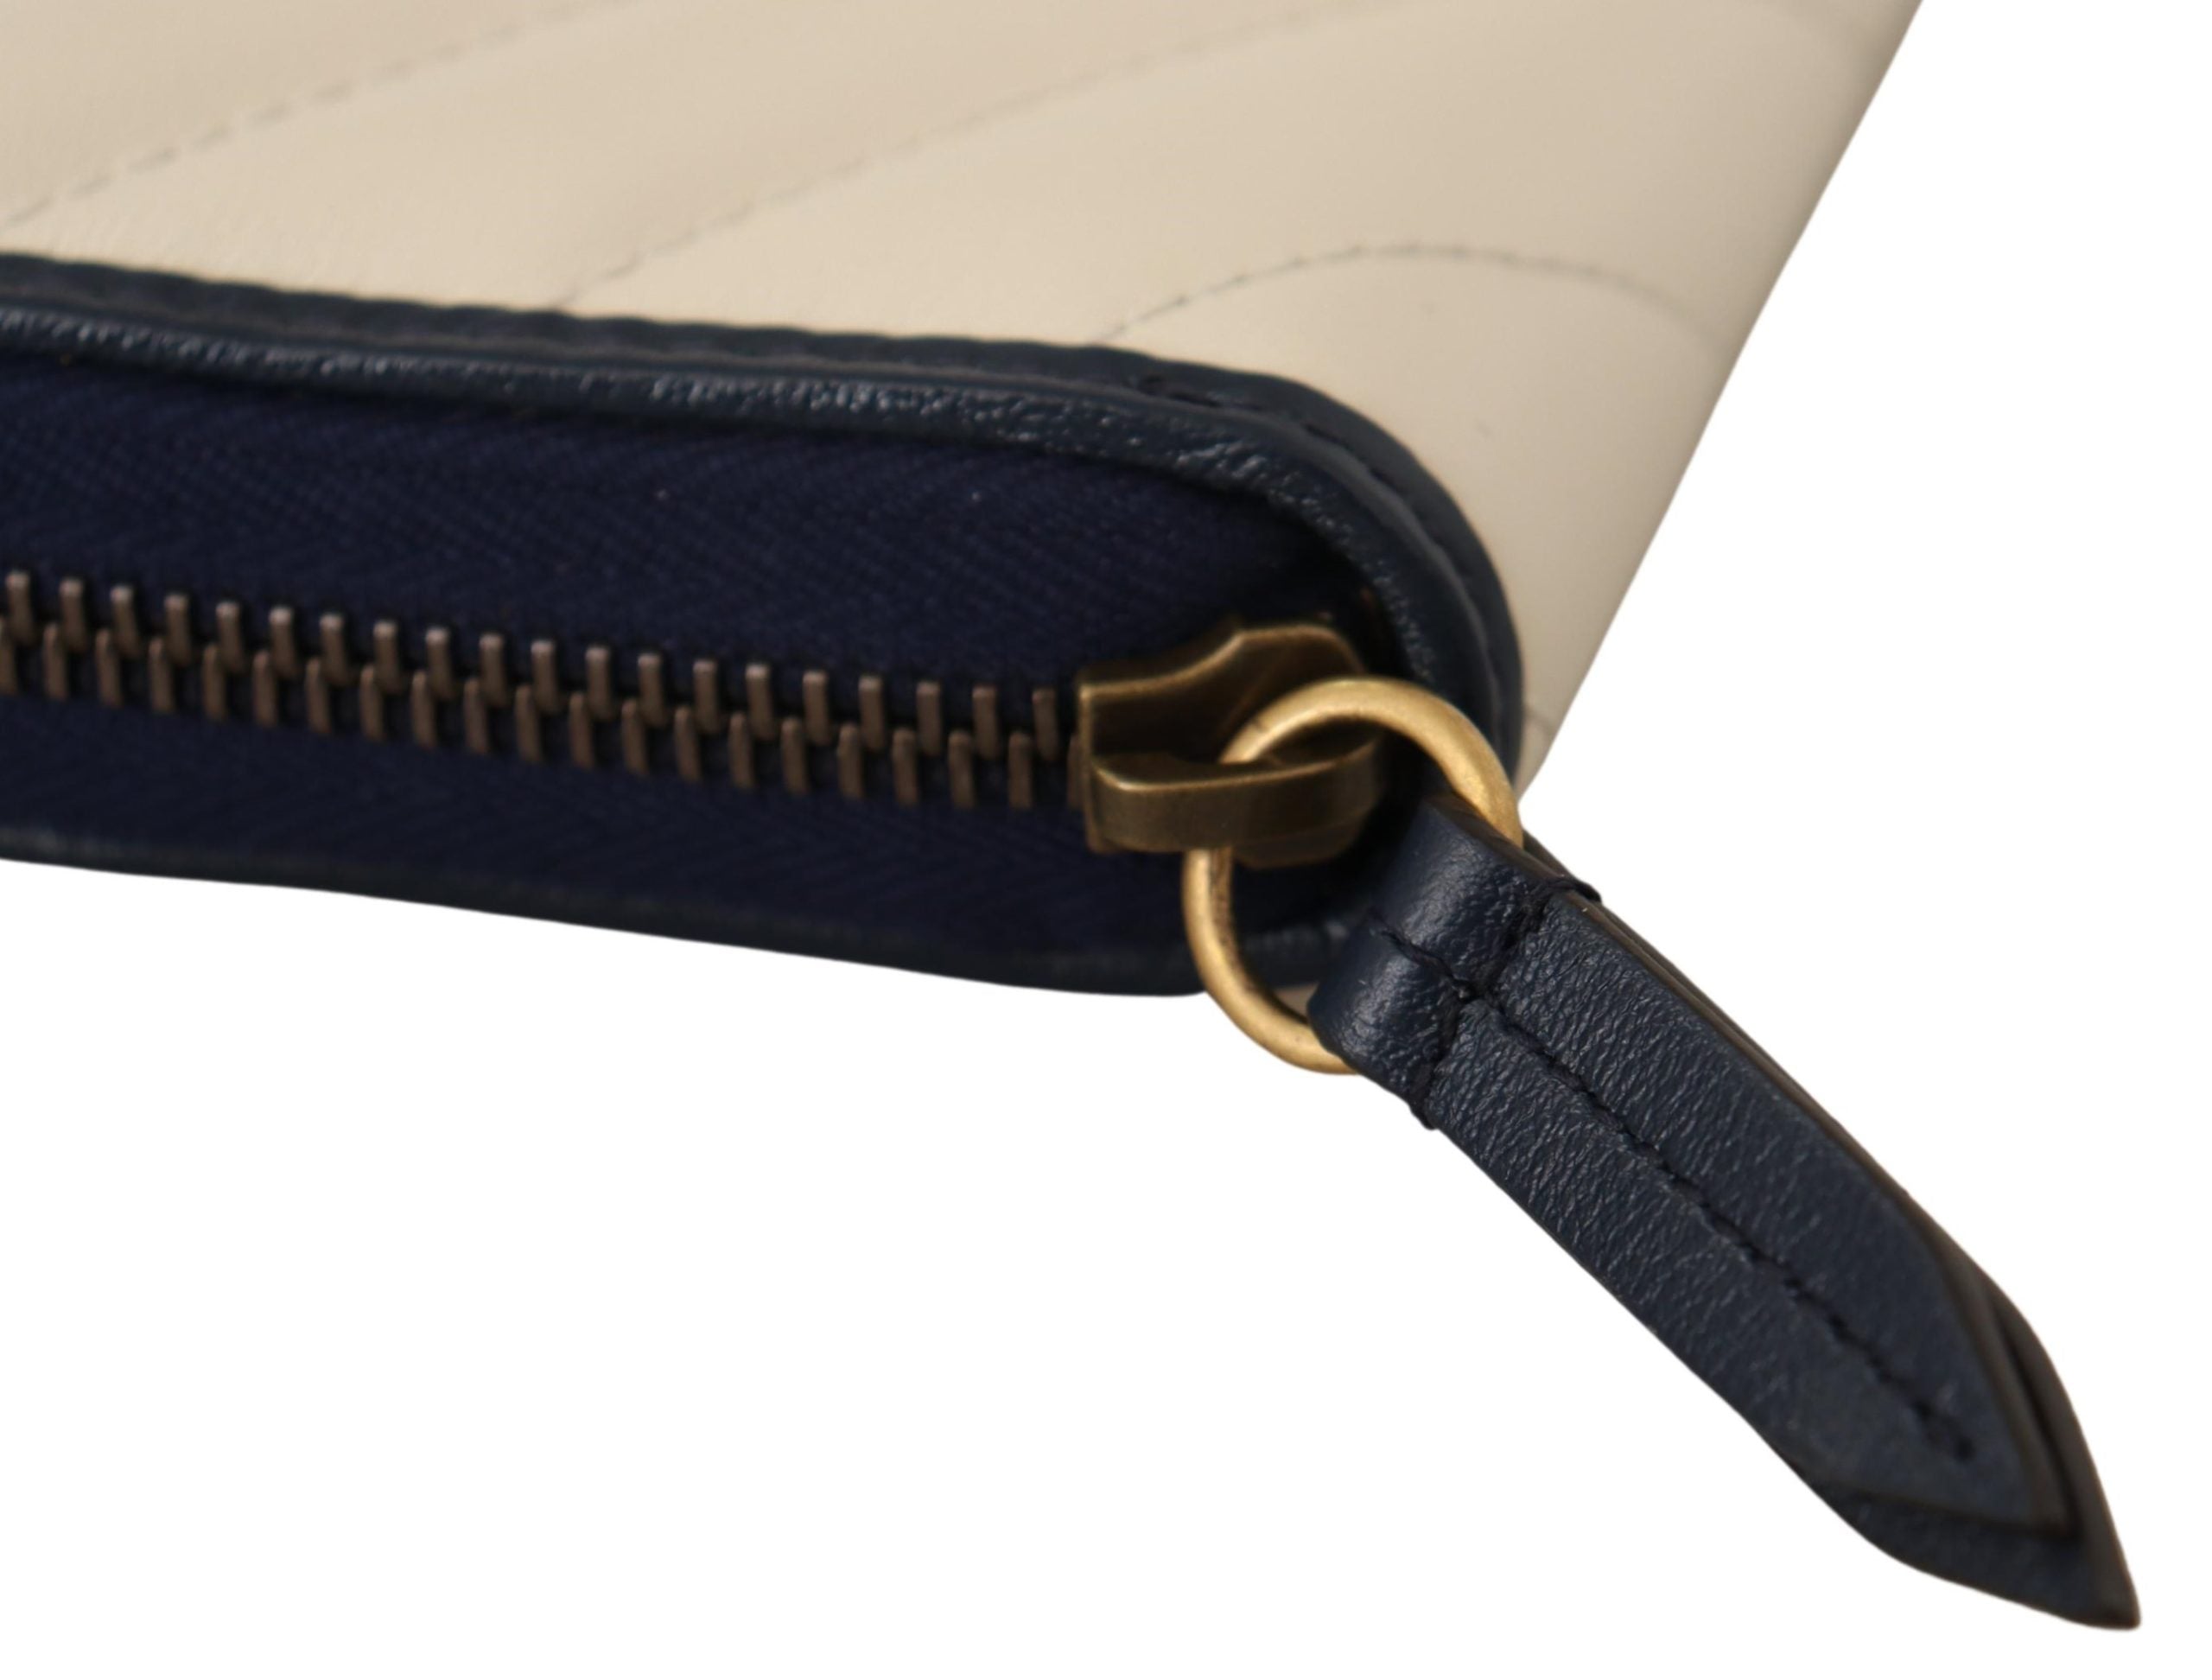 White & Blue Leather Marmont GG Torchon Zip Around Wallet